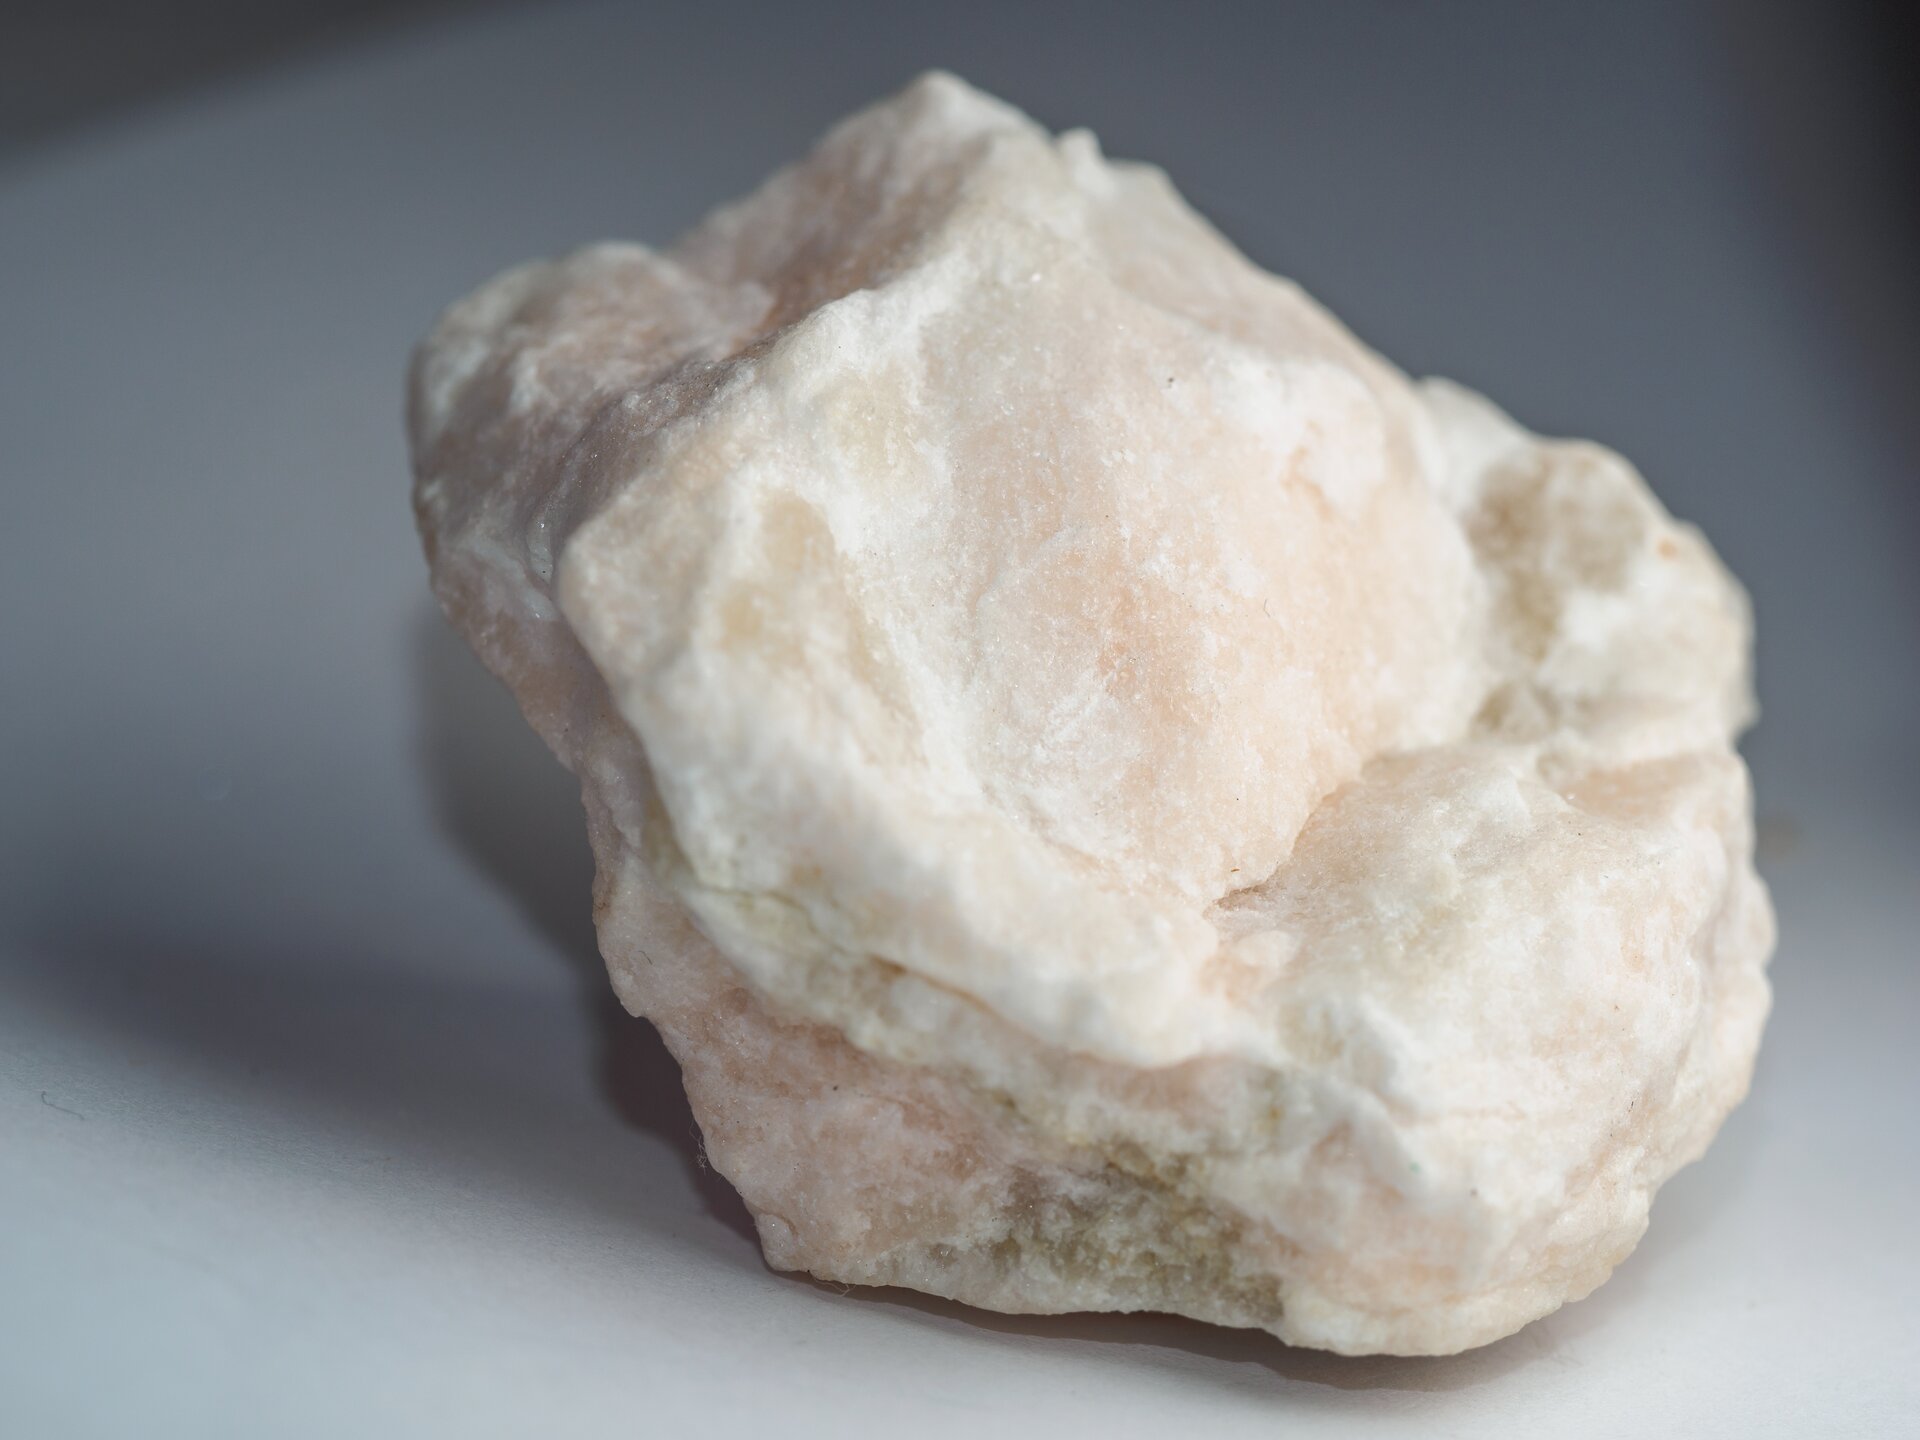 Zdjęcie przedstawia gips. Jest to minerał o delikatnych nierównościach. Ma białą barwę.